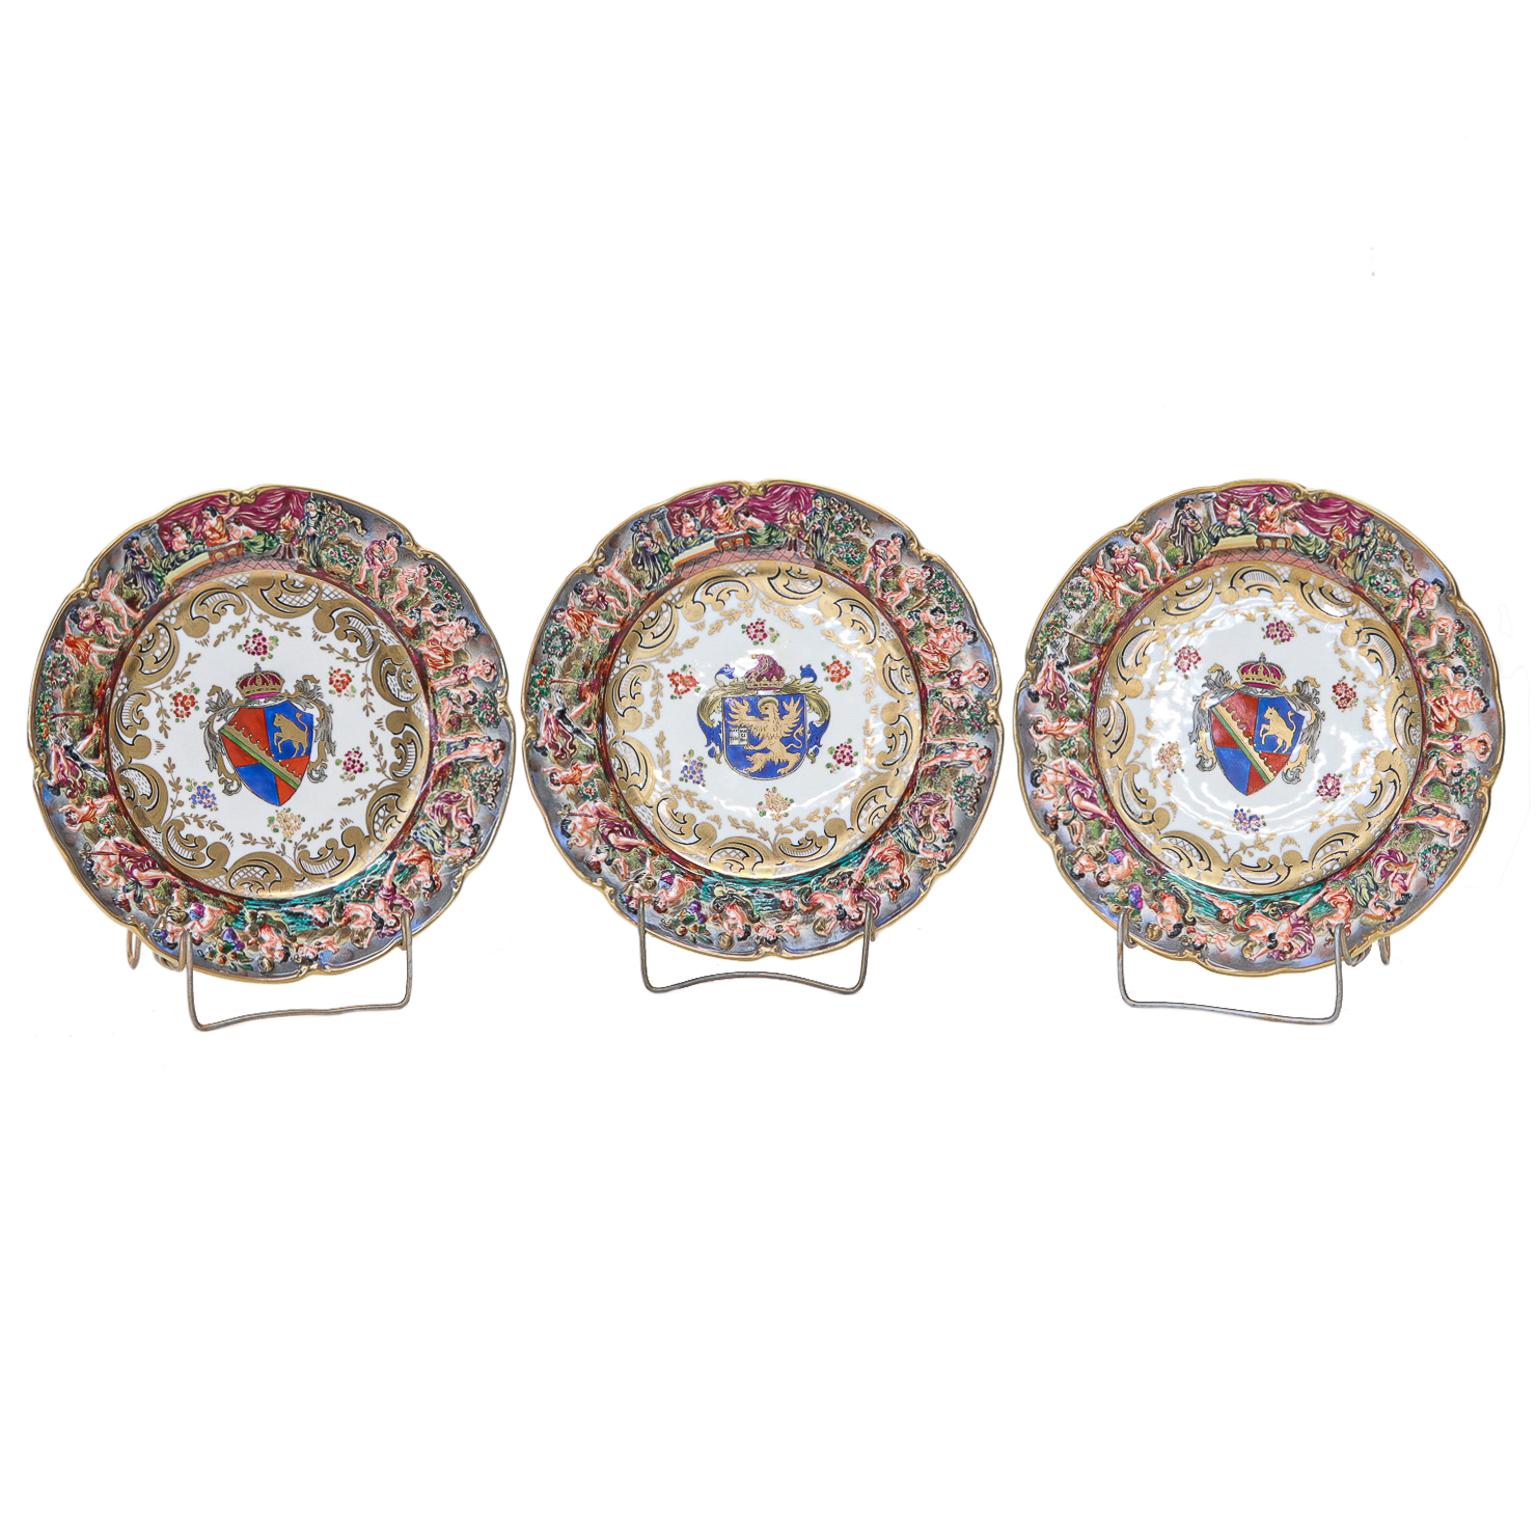 Ein exquisiter Satz von 12 Capo di Monte Wappentellern aus Porzellan aus dem späten 19. Jahrhundert.
Jedes ist mit einem einzigartigen Familienwappen in der Mitte mit einer vergoldeten Umrandung, gerollten und gepunkteten Schriftrollen bemalt. Die